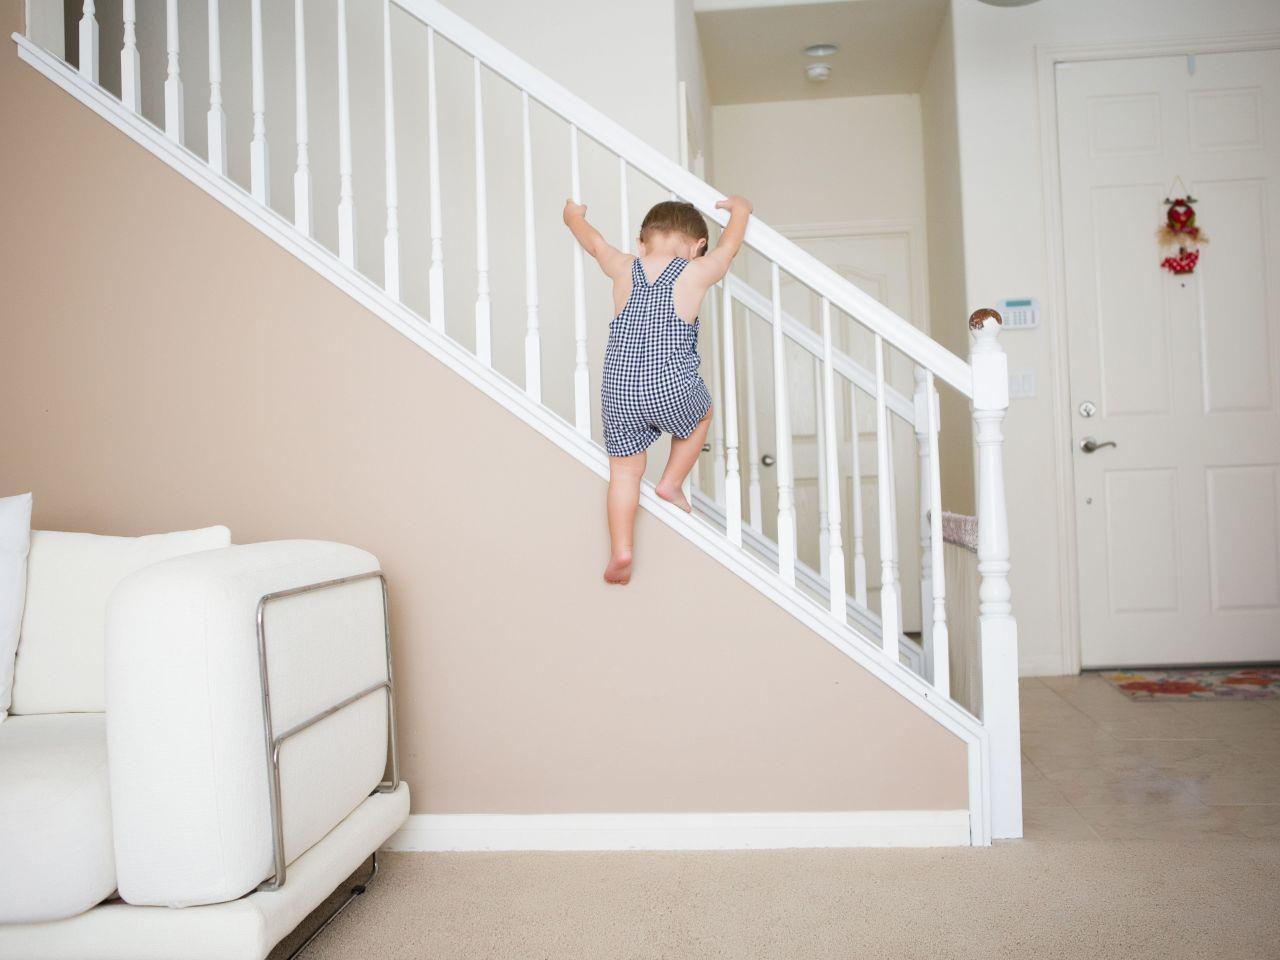 Текст из коридора по деревянной лестнице дети. Барашек у лестницы трансформера. Что маленькие детки поднимаются на лестницу. Baby Proofing. Baby Proof.